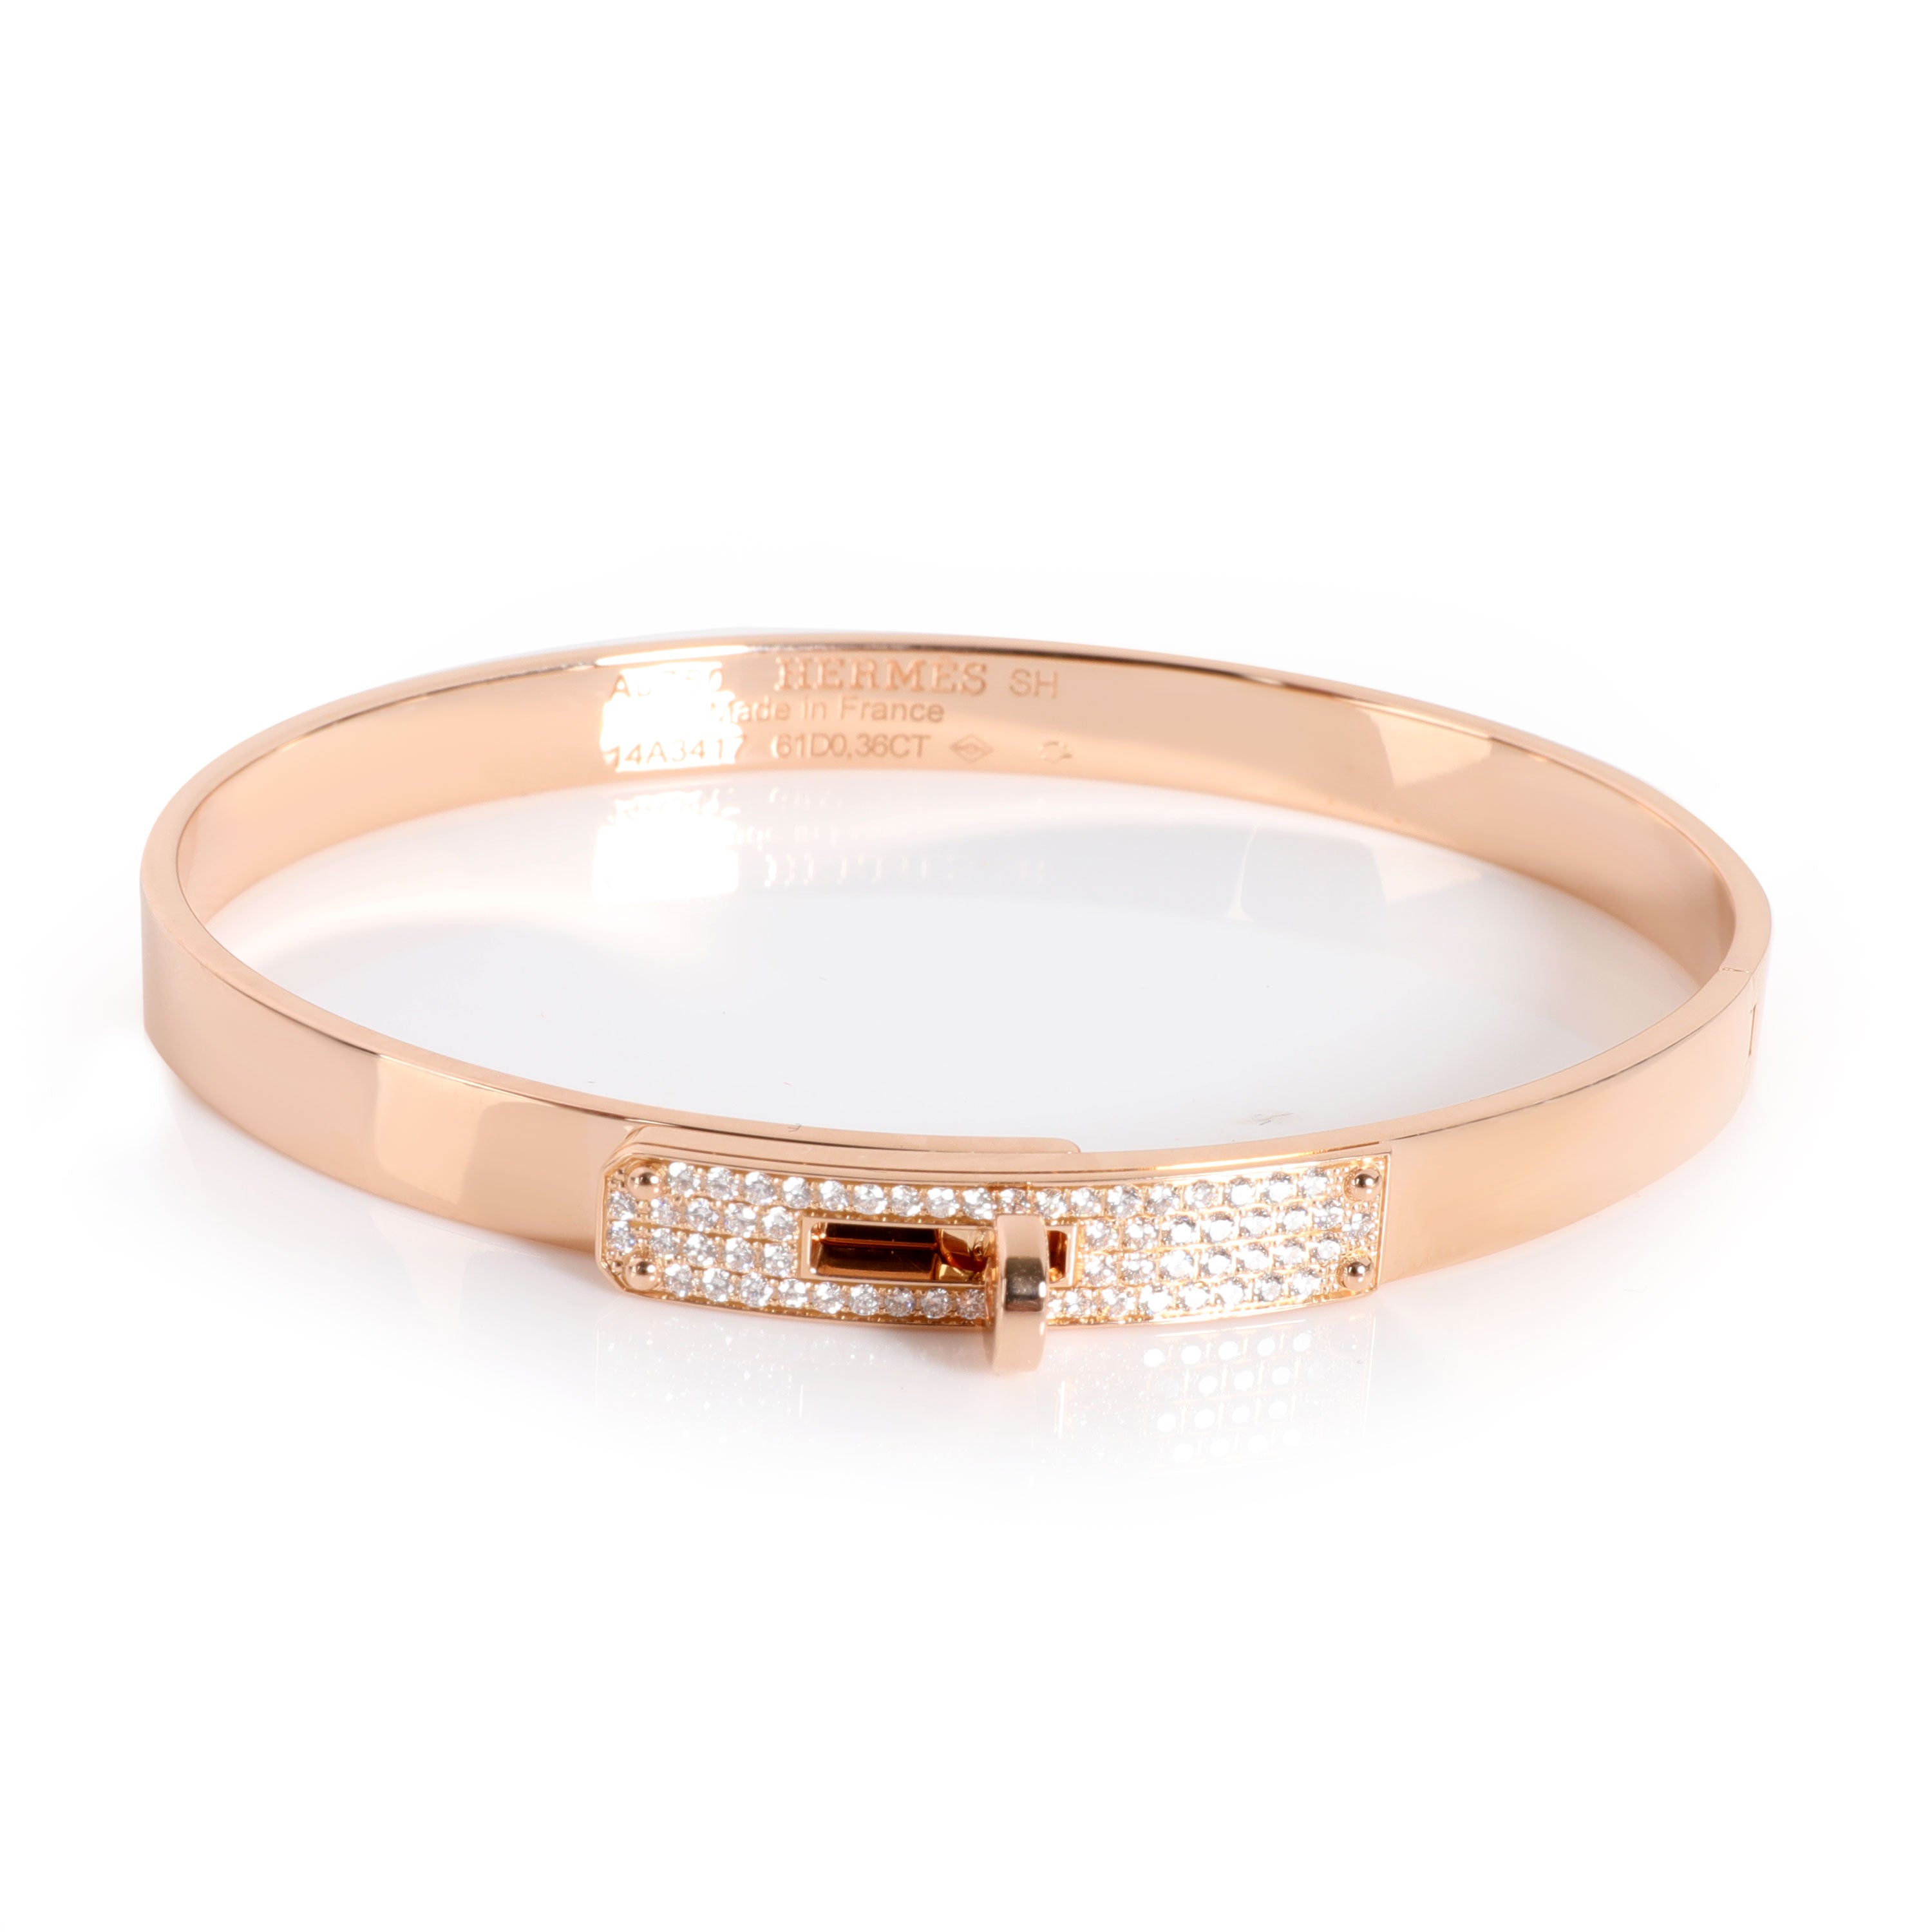 SOLD! Perfect Gift-Hermes Mini Kelly Bracelet  Hermes jewelry bracelet,  Womens jewelry bracelets, Perfect gift